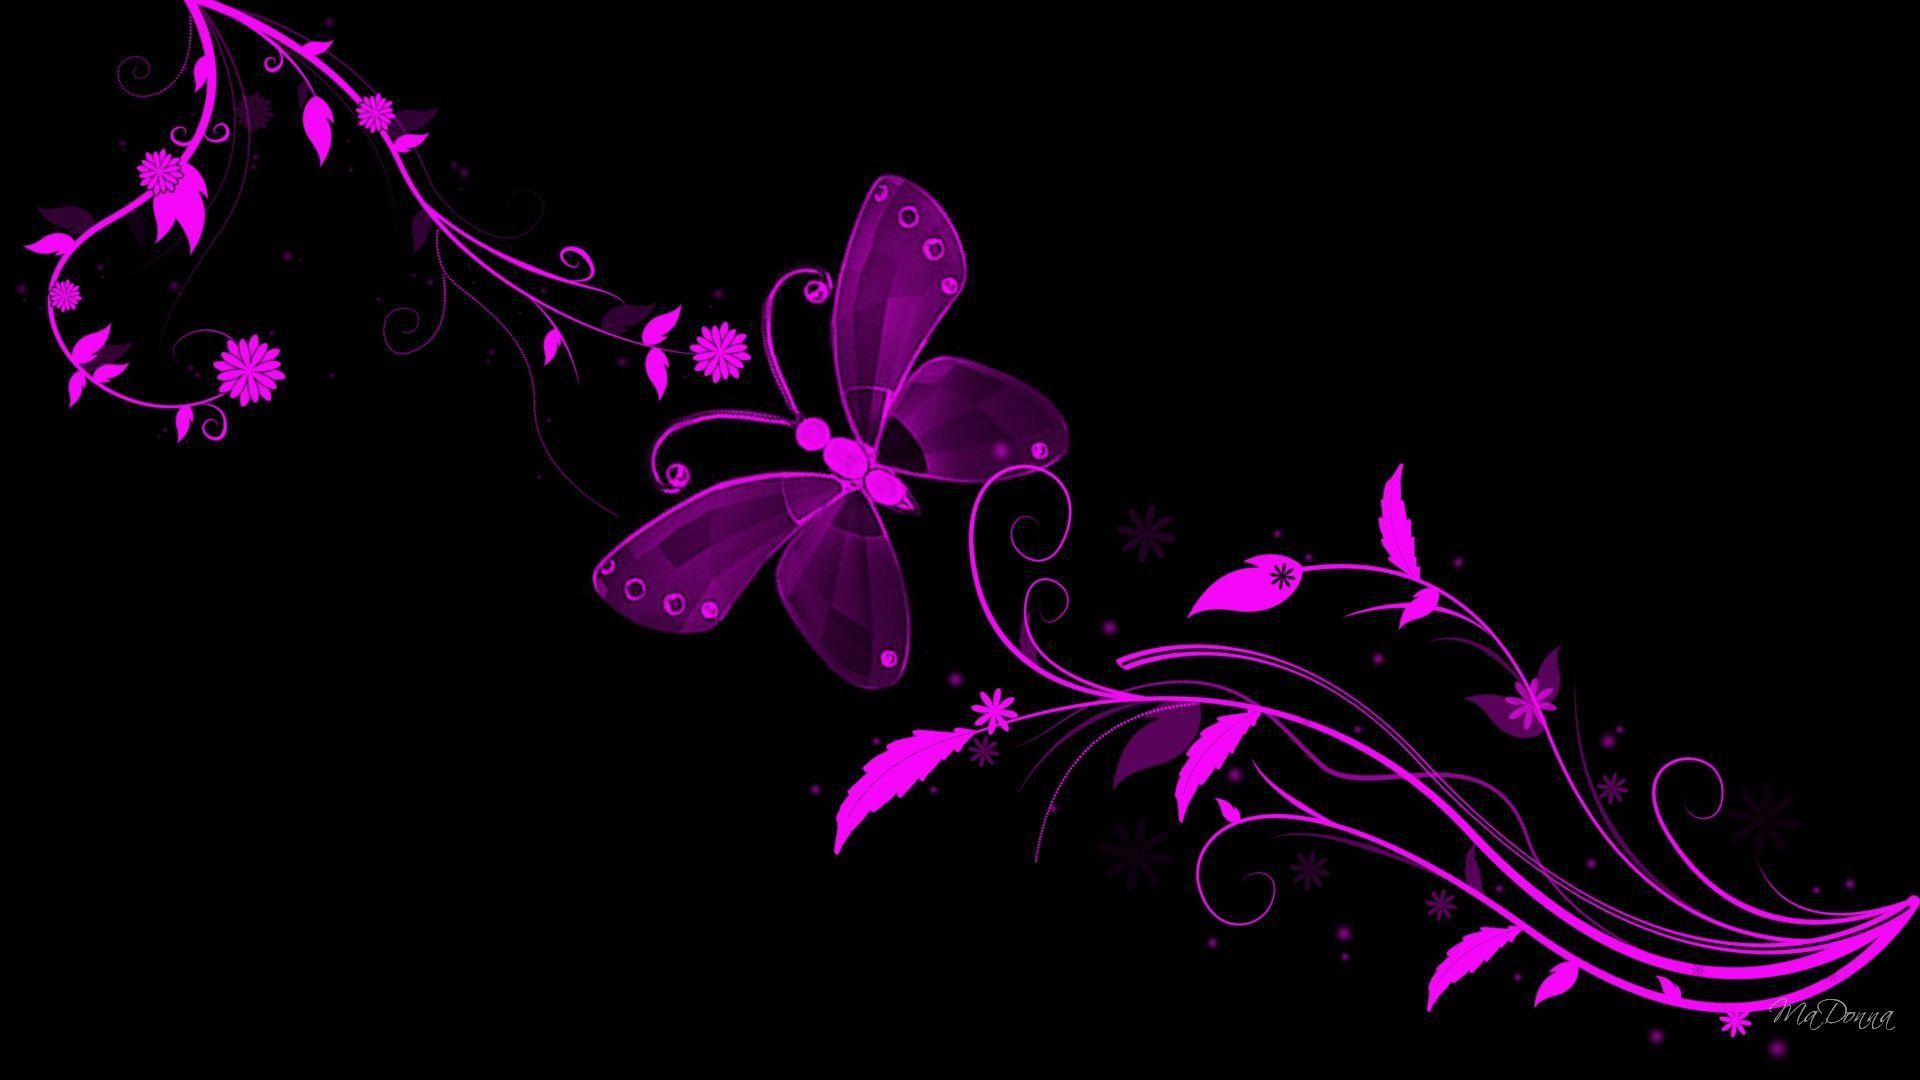 Black Butterfly wallpaper. Black and purple wallpaper, Butterfly